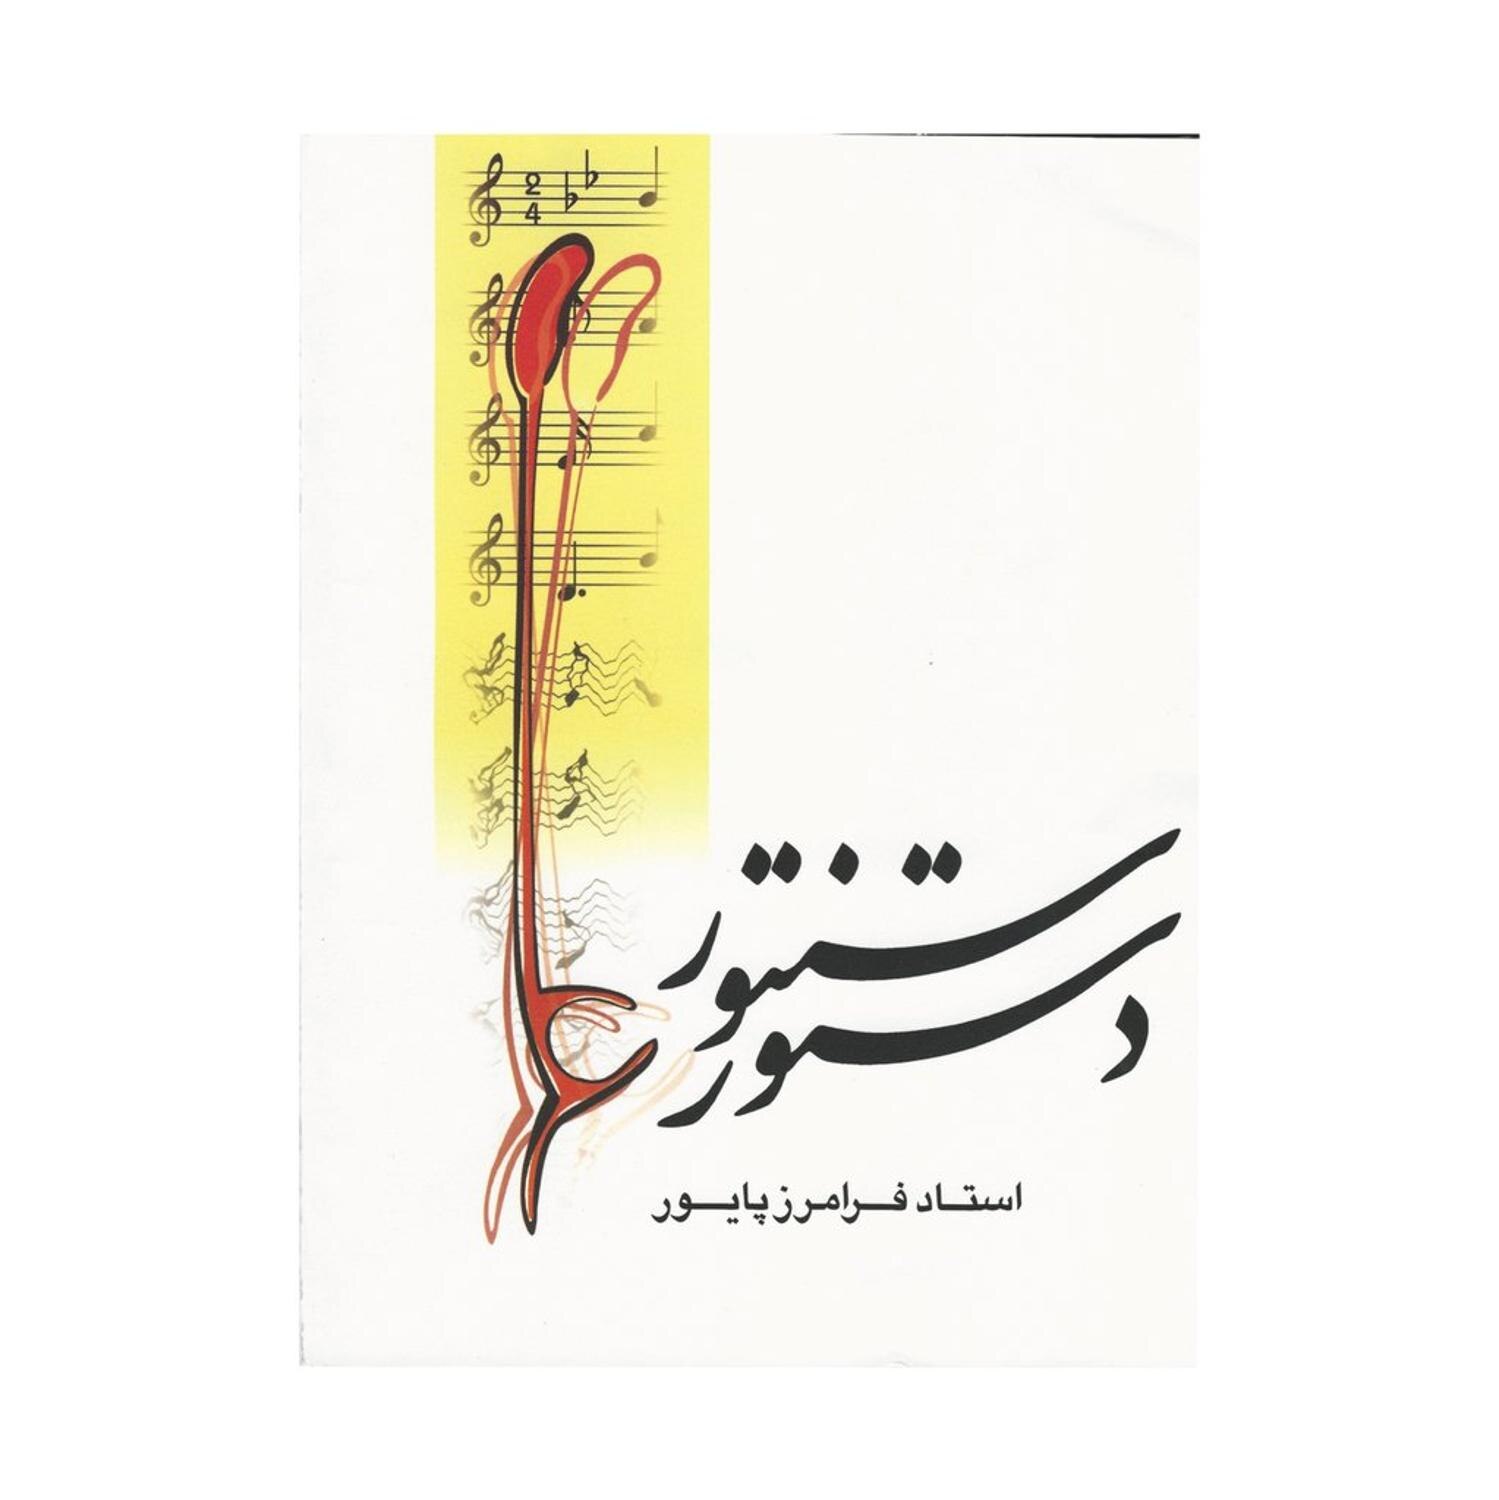 Lærebog til persisk santoor santur dulcimer abs -310